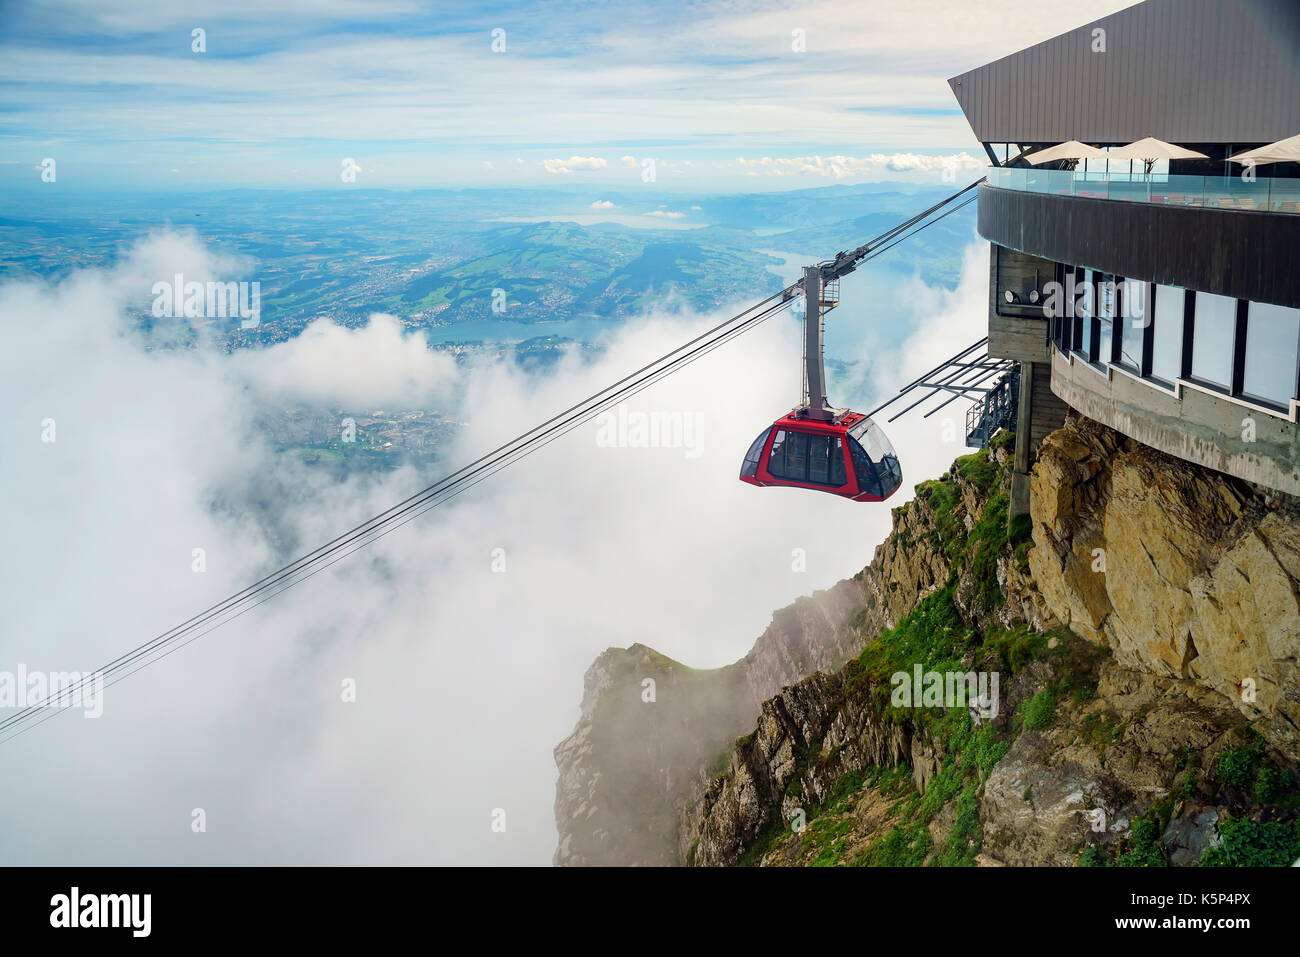 Die neue und schöne Seilbahn - Drachen Ritt auf den Pilatus, Luzern, Schweiz Stockfoto